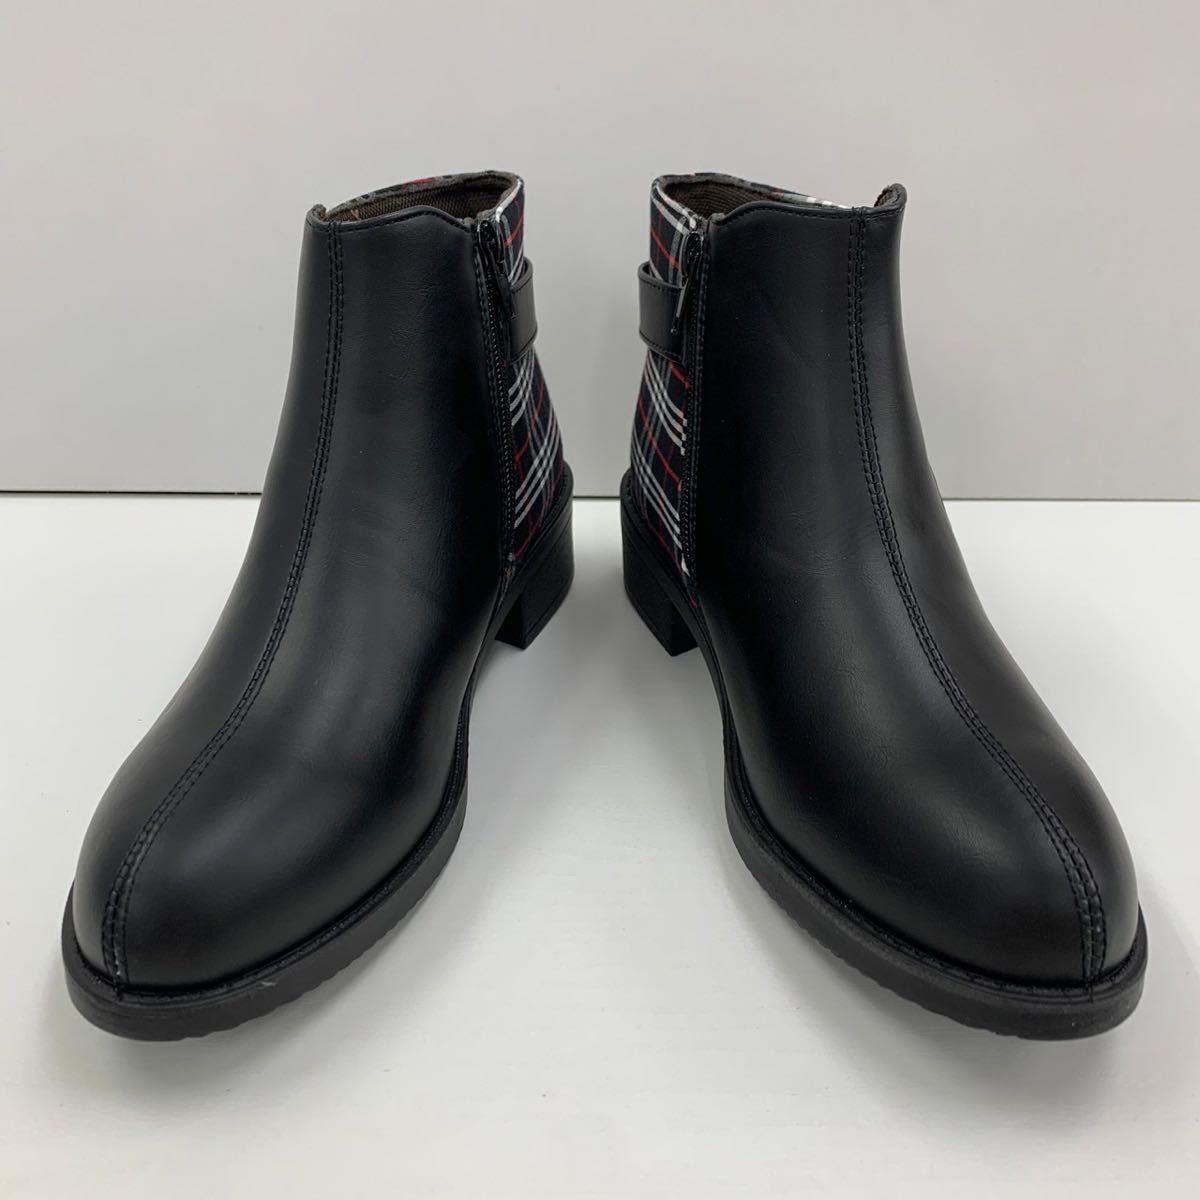  новый товар женский L размер 23.5-24.0cm водоотталкивающий ботинки искусственная кожа ботинки короткие сапоги ремень ботинки Zip ботинки черный чёрный taby9862